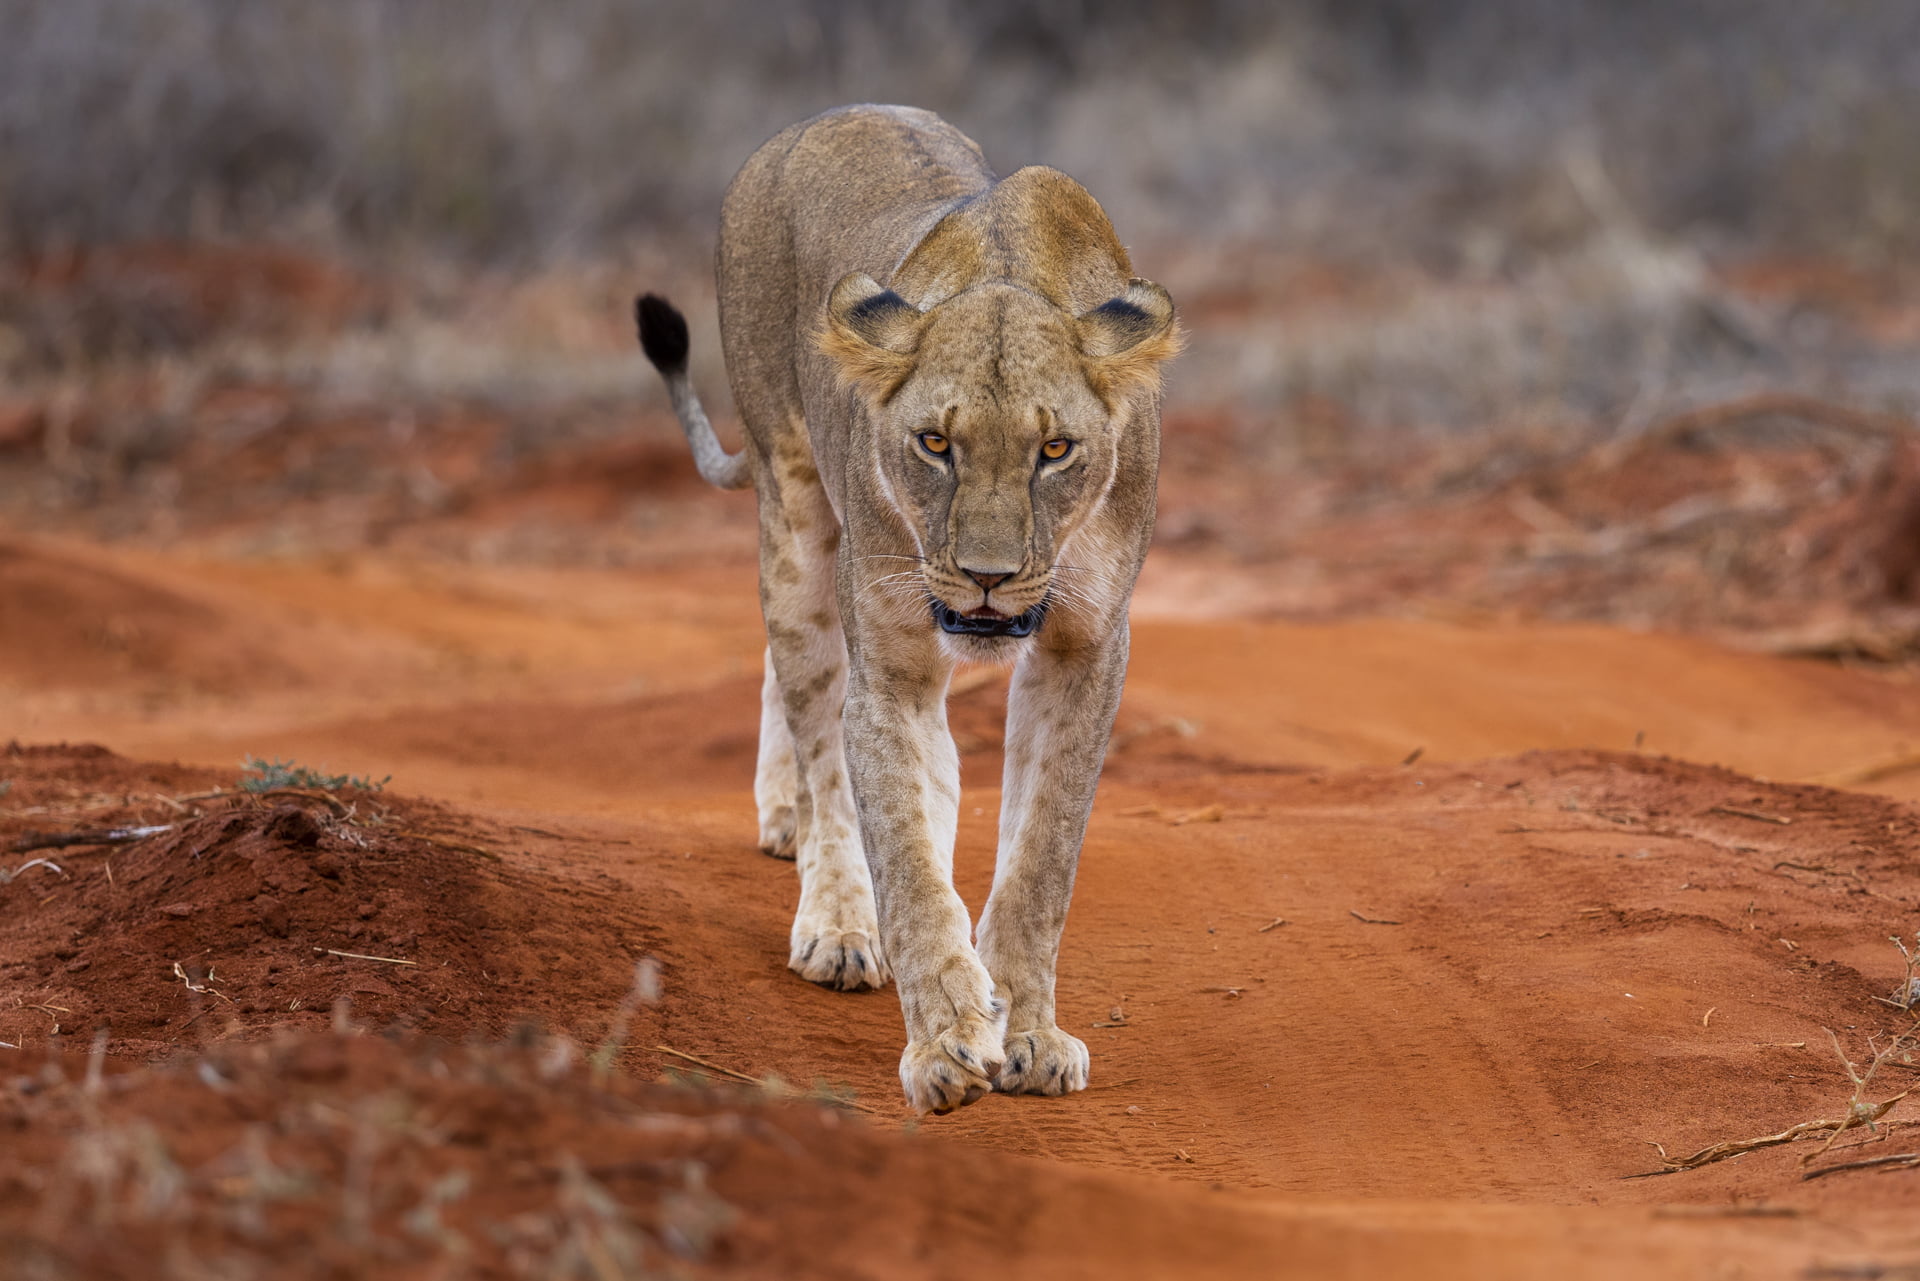 Une lionne marche dans la réserve de tsavo est, Kenya - A lioness walks in the tsavo east reserve, Kenya / Panthera leo